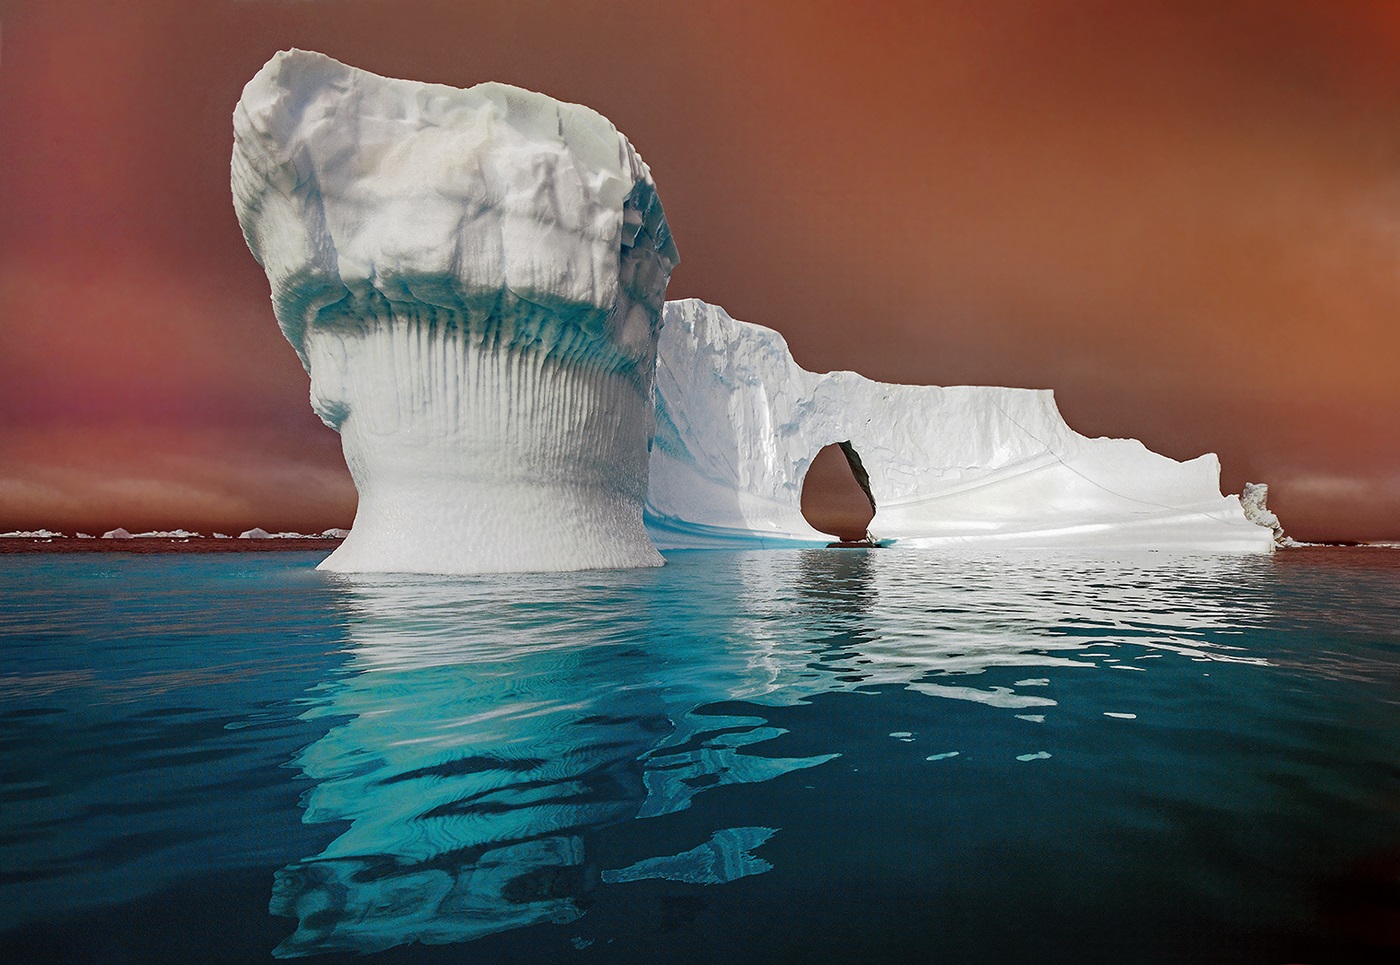 Un altru iceberg off Grotlande occidentali